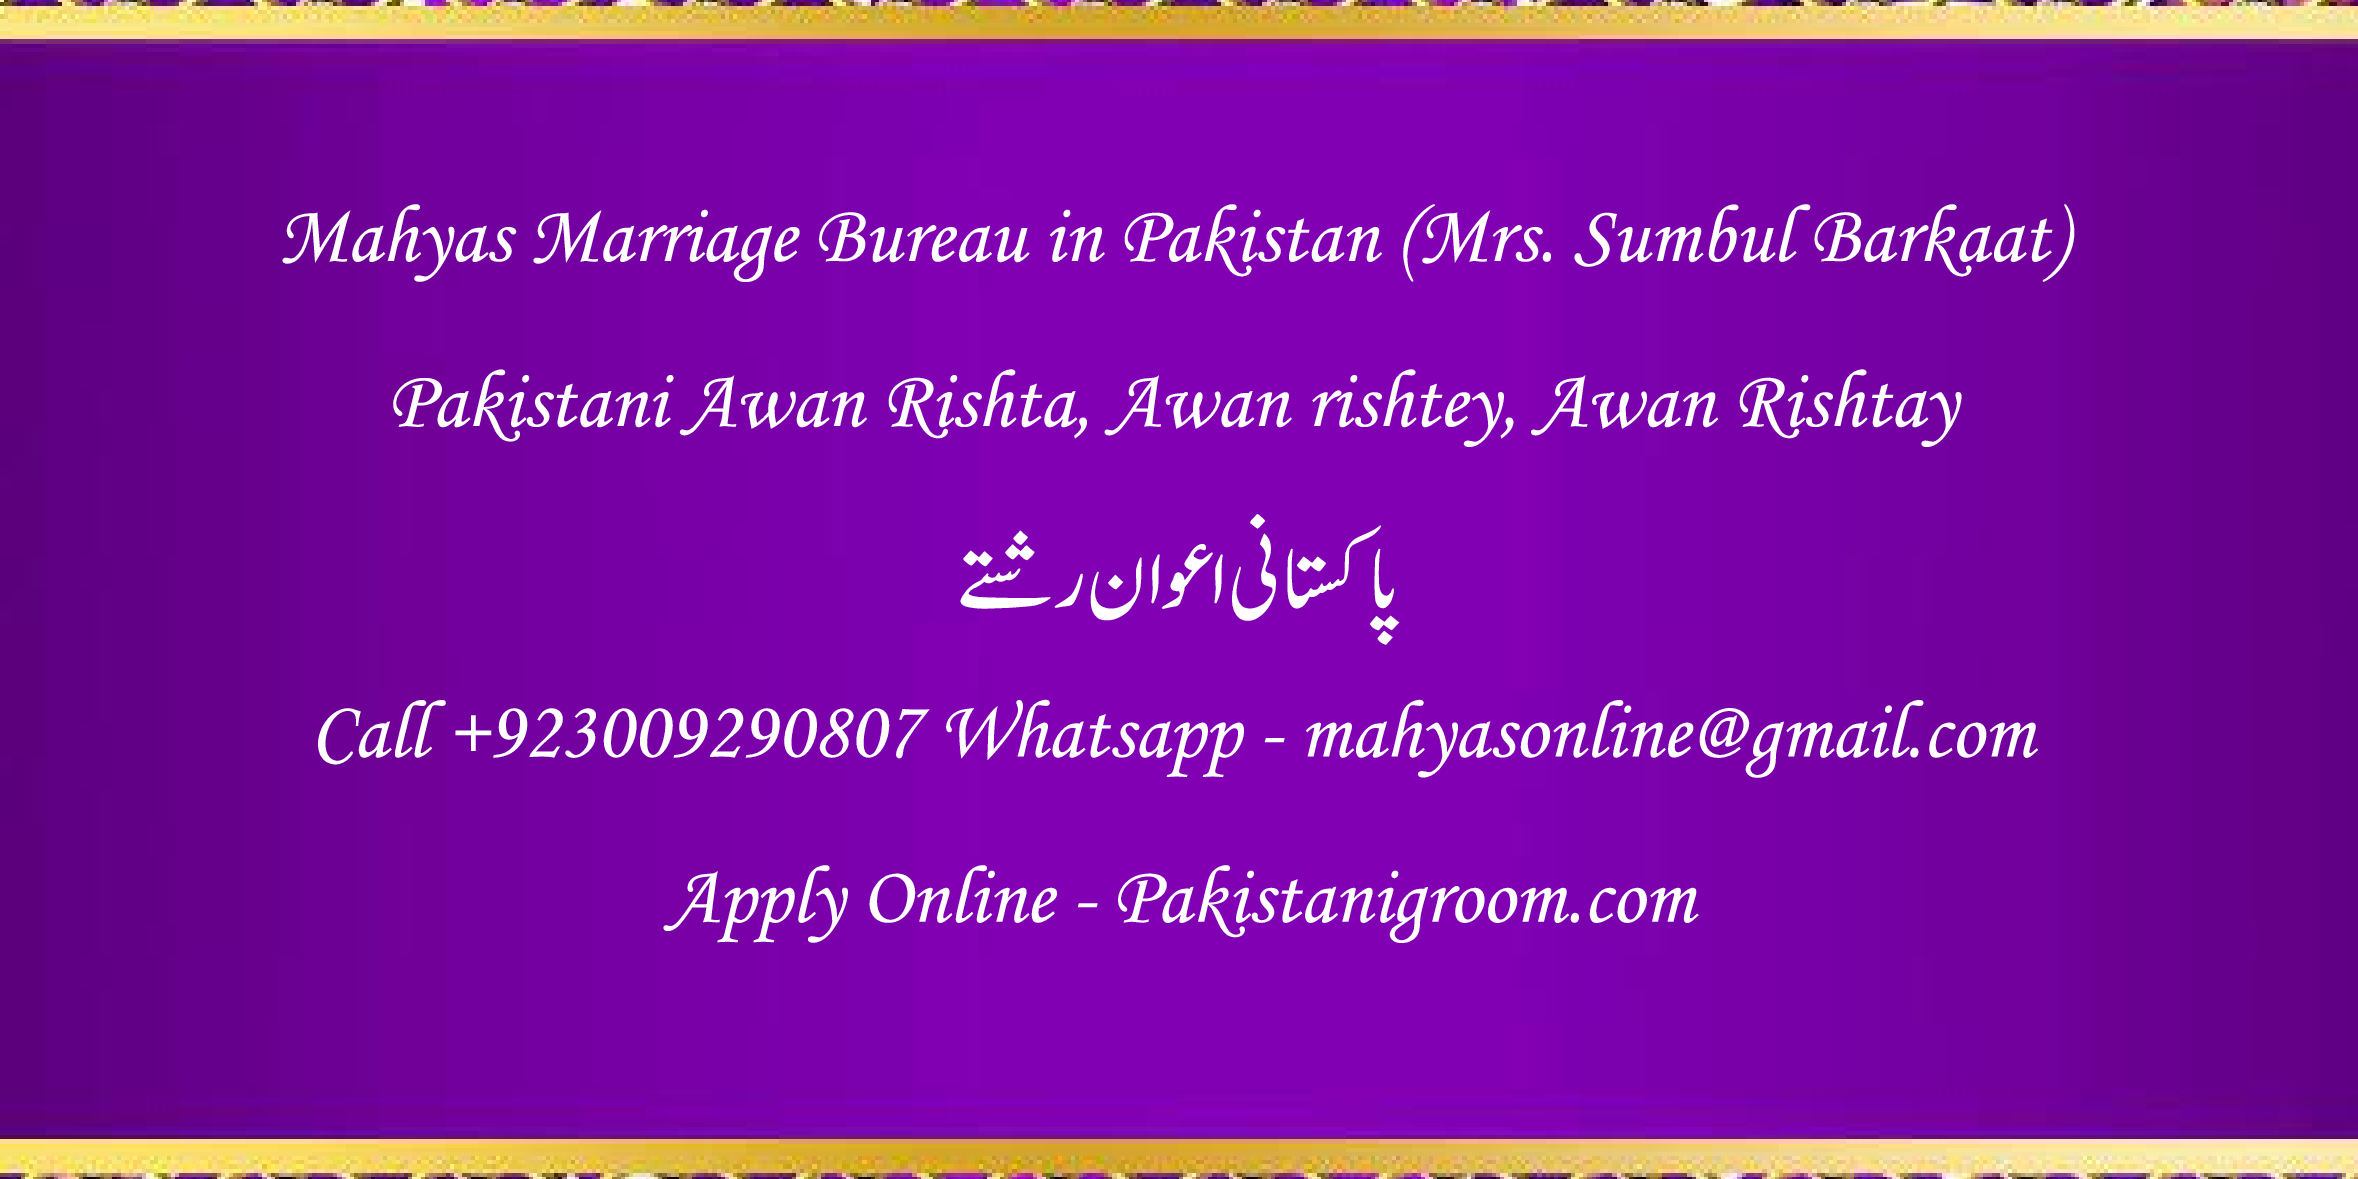 Mahyas-marriage-bureau-Karachi-Pakistan-for-Shia-Sunni-Remarriage-Divorce-Widow-Second-marriage-Punjabi-Pashto-Urdu-5.png